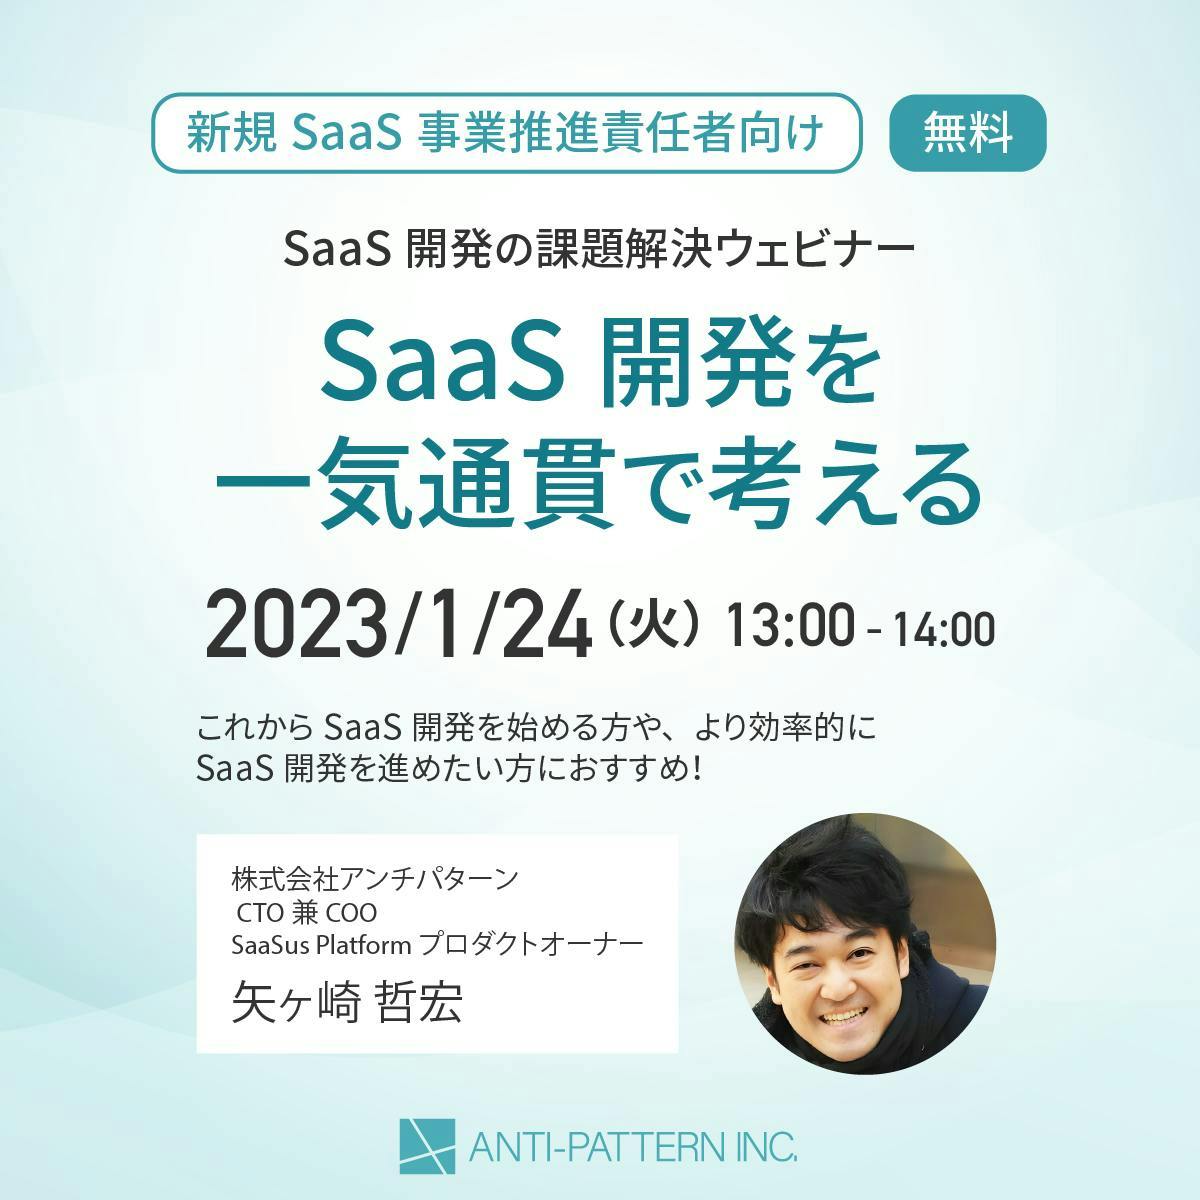 [新規SaaS事業推進責任者向け]
SaaS開発の課題解決ウェビナー開催のお知らせ